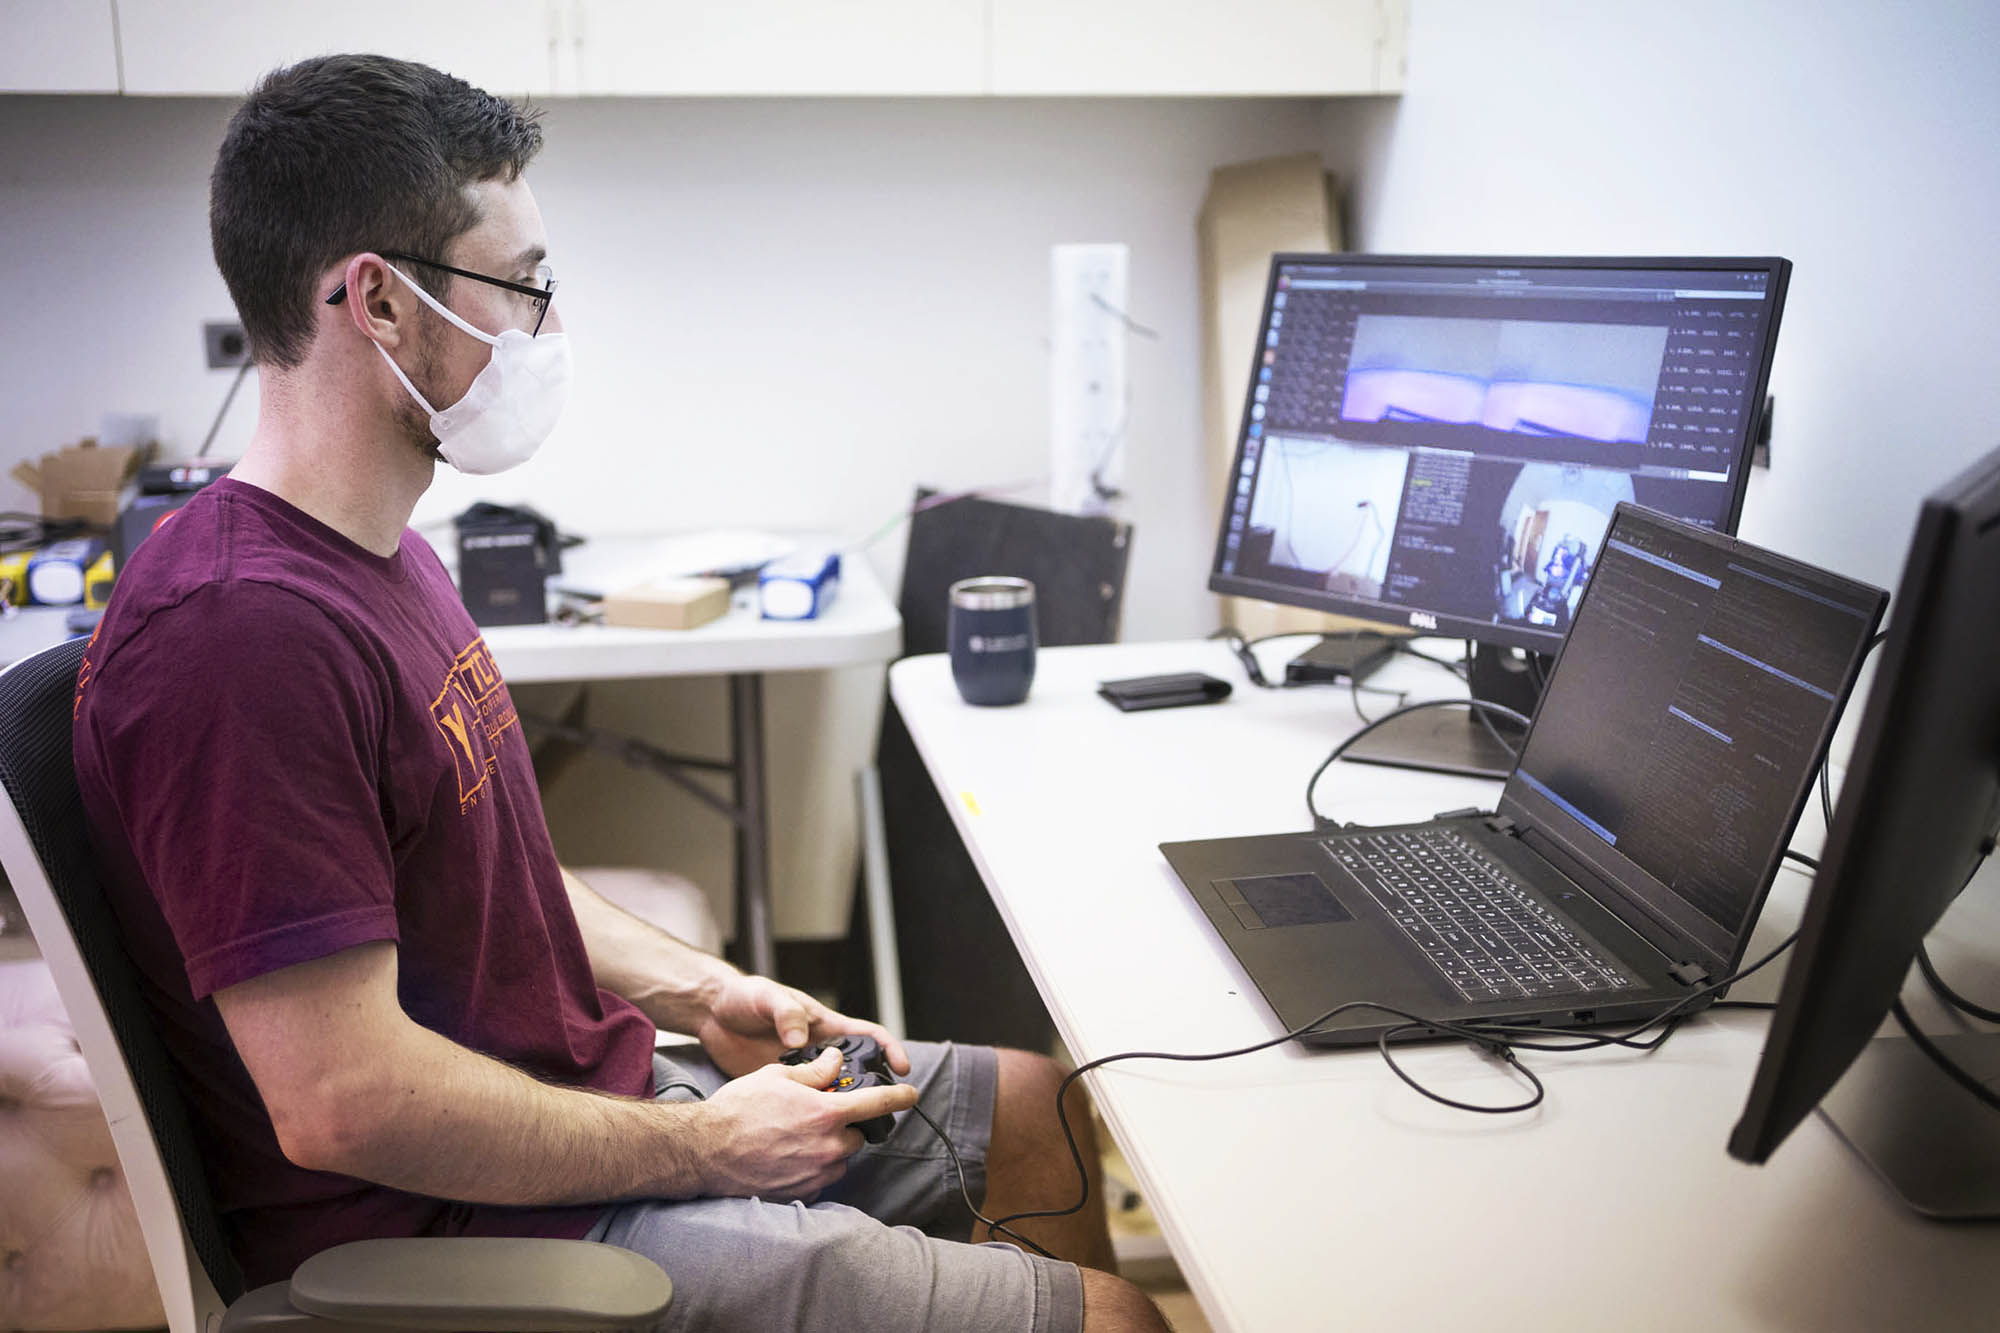 Conte uses a game controller to run a robot through a computer